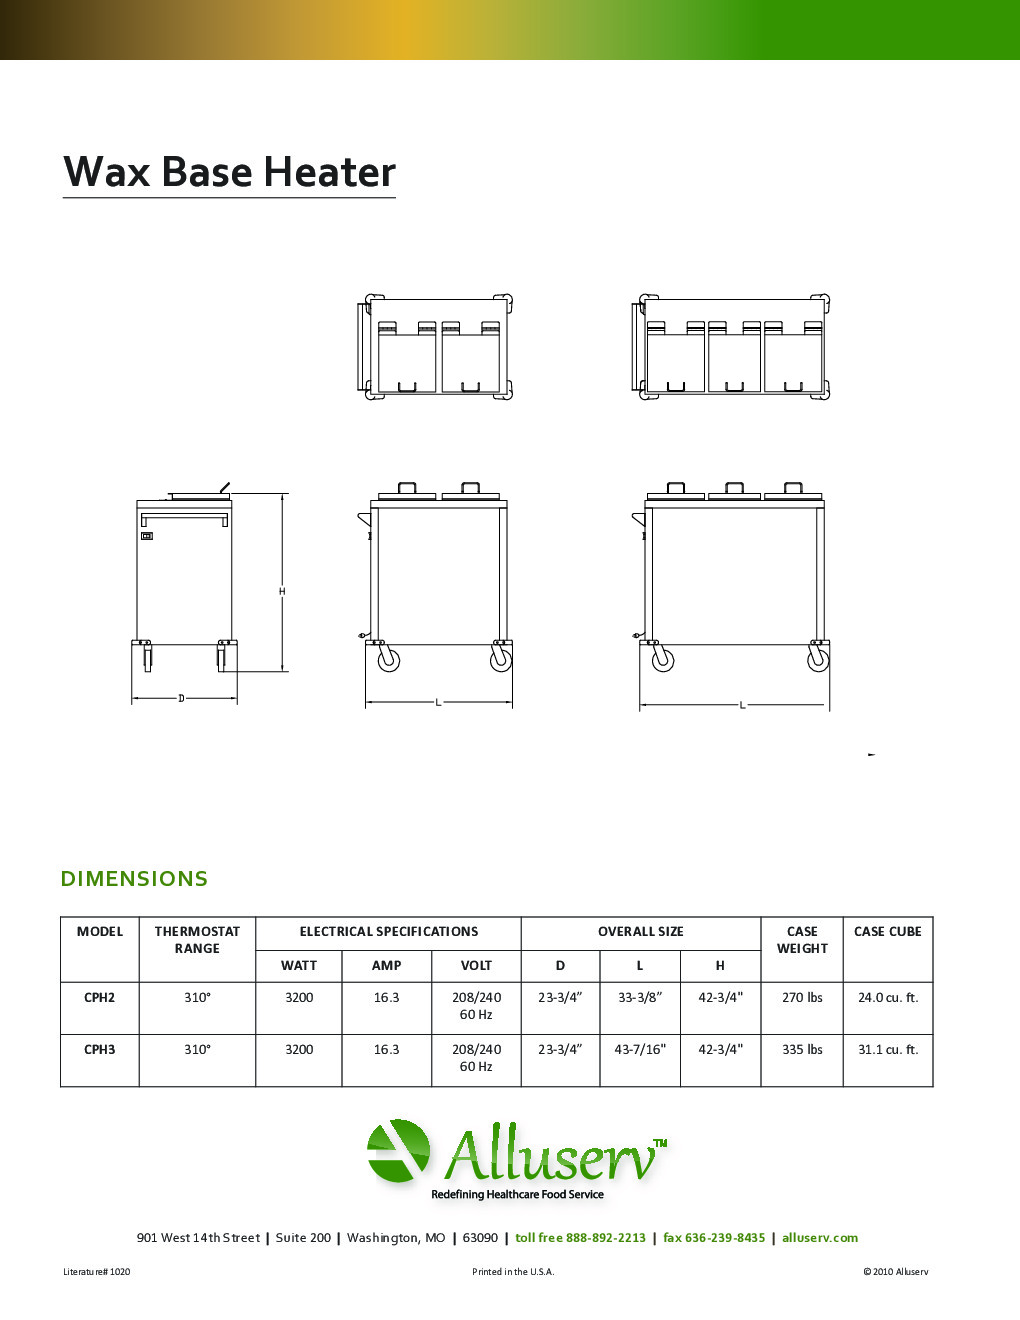 Alluserv CBH3 Thermal Pellet Base / Underliner Dispenser